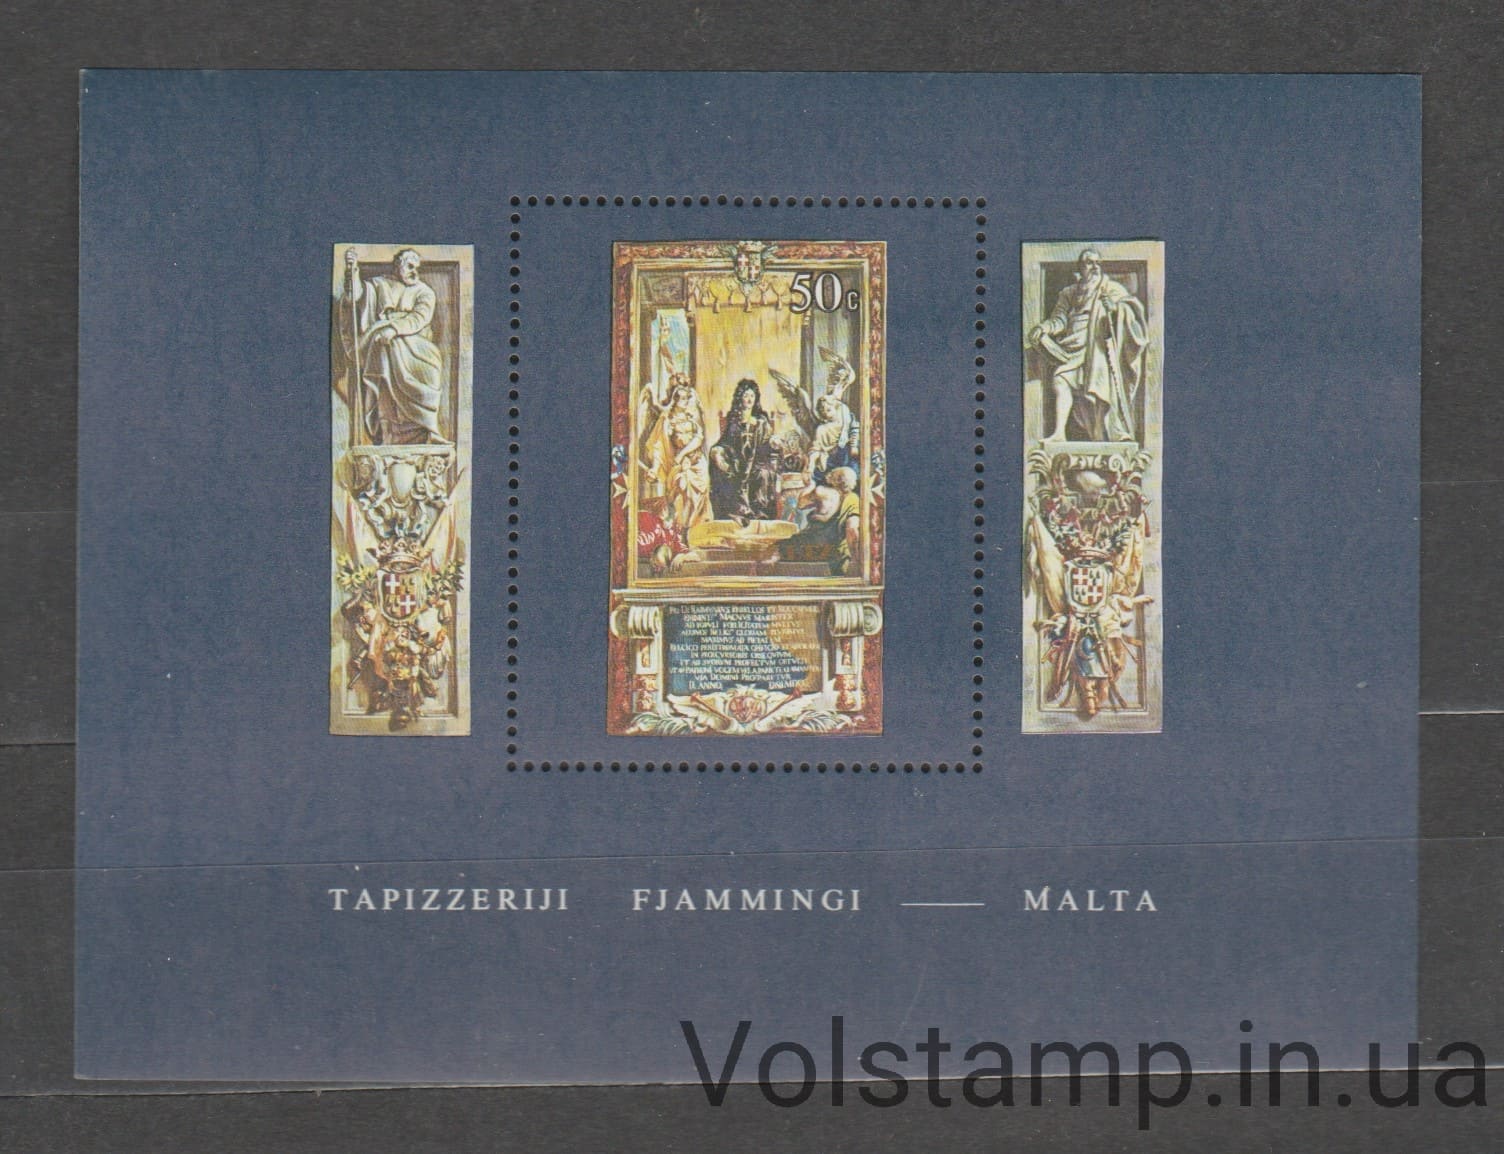 1980 Malta Block (Flemish tapestries, art) MNH №BL6